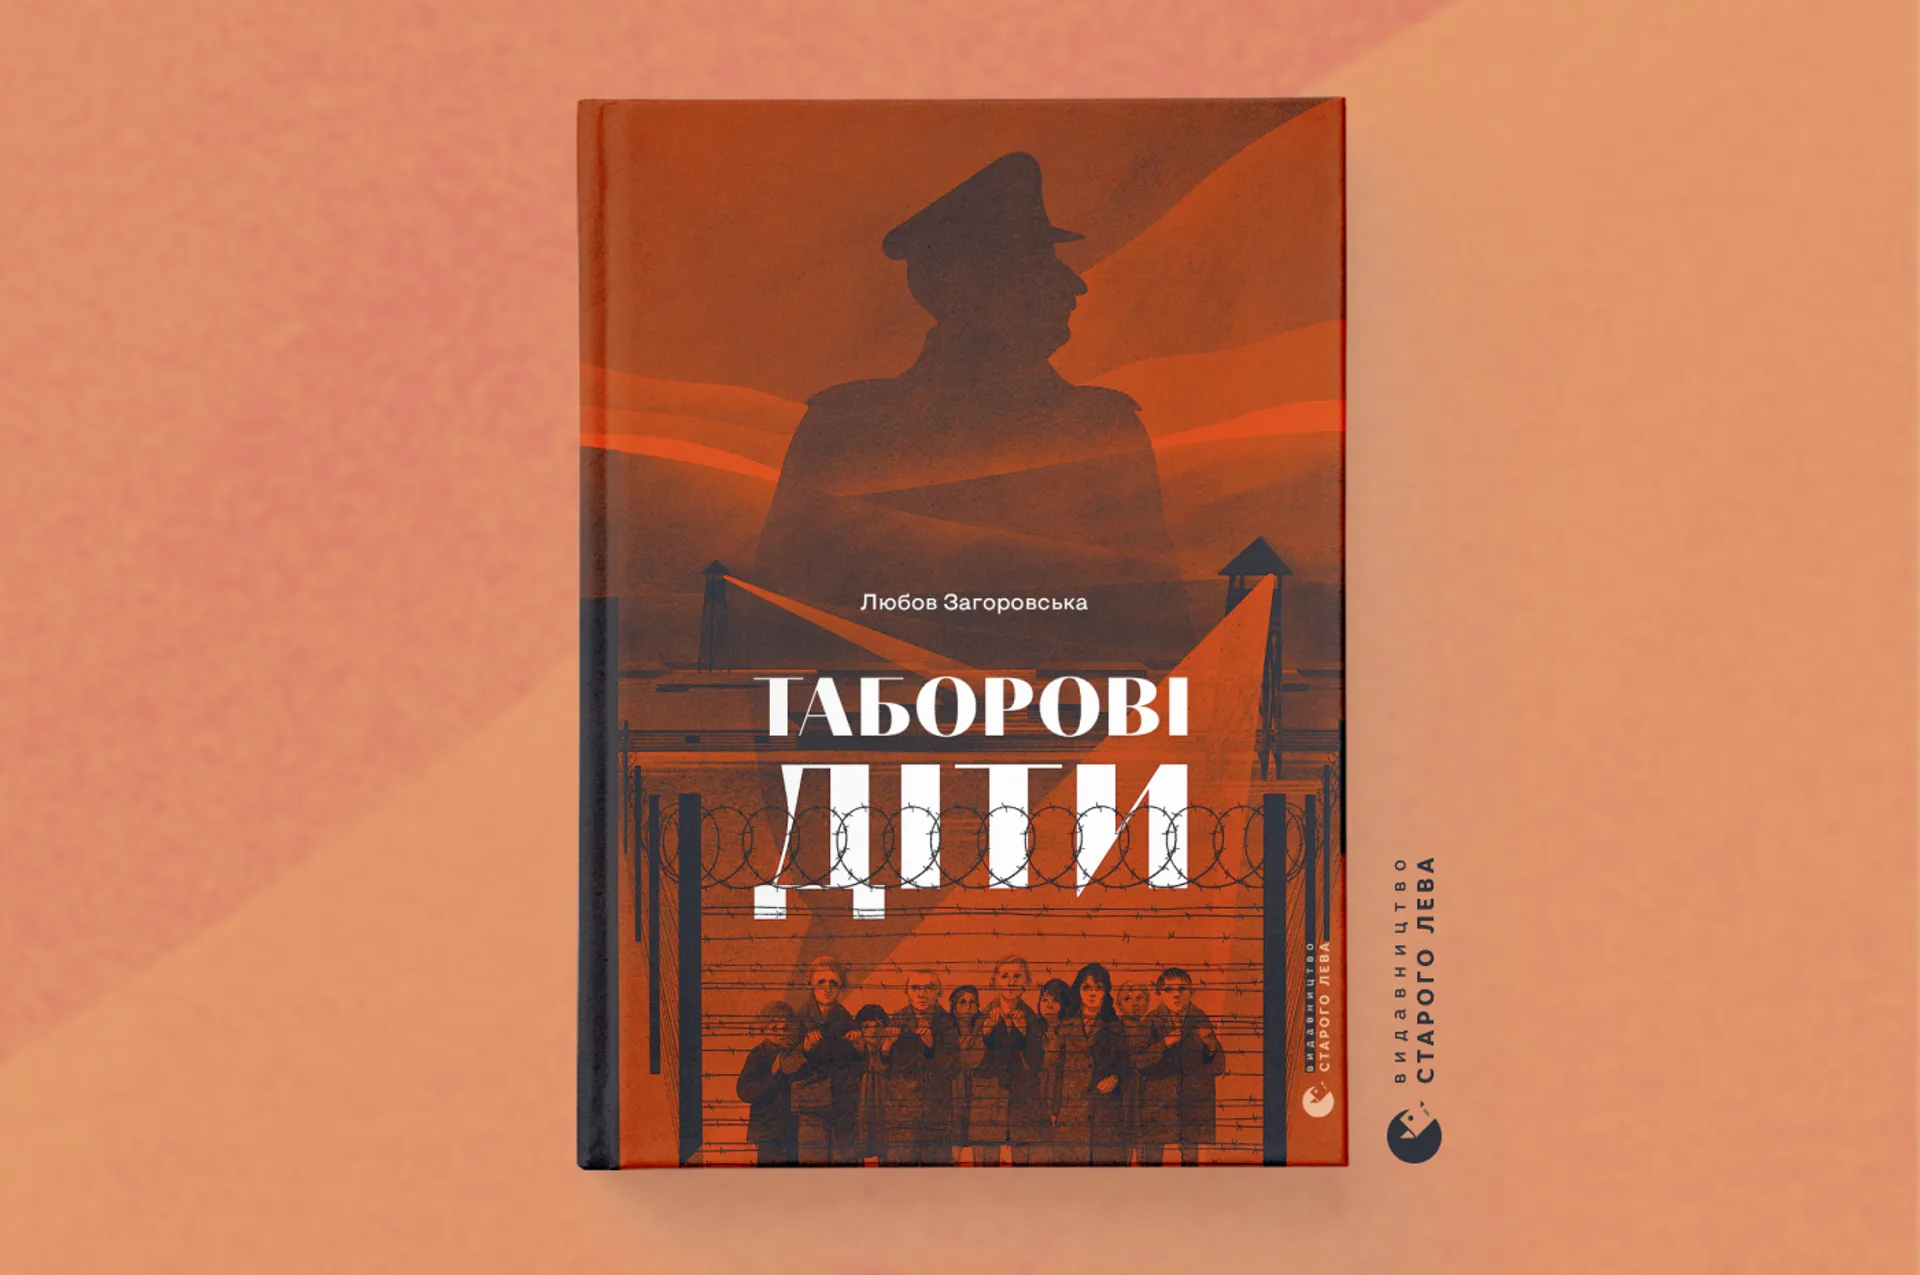 «Таборові діти» — у Любові Загоровської виходить нова книга свідчень